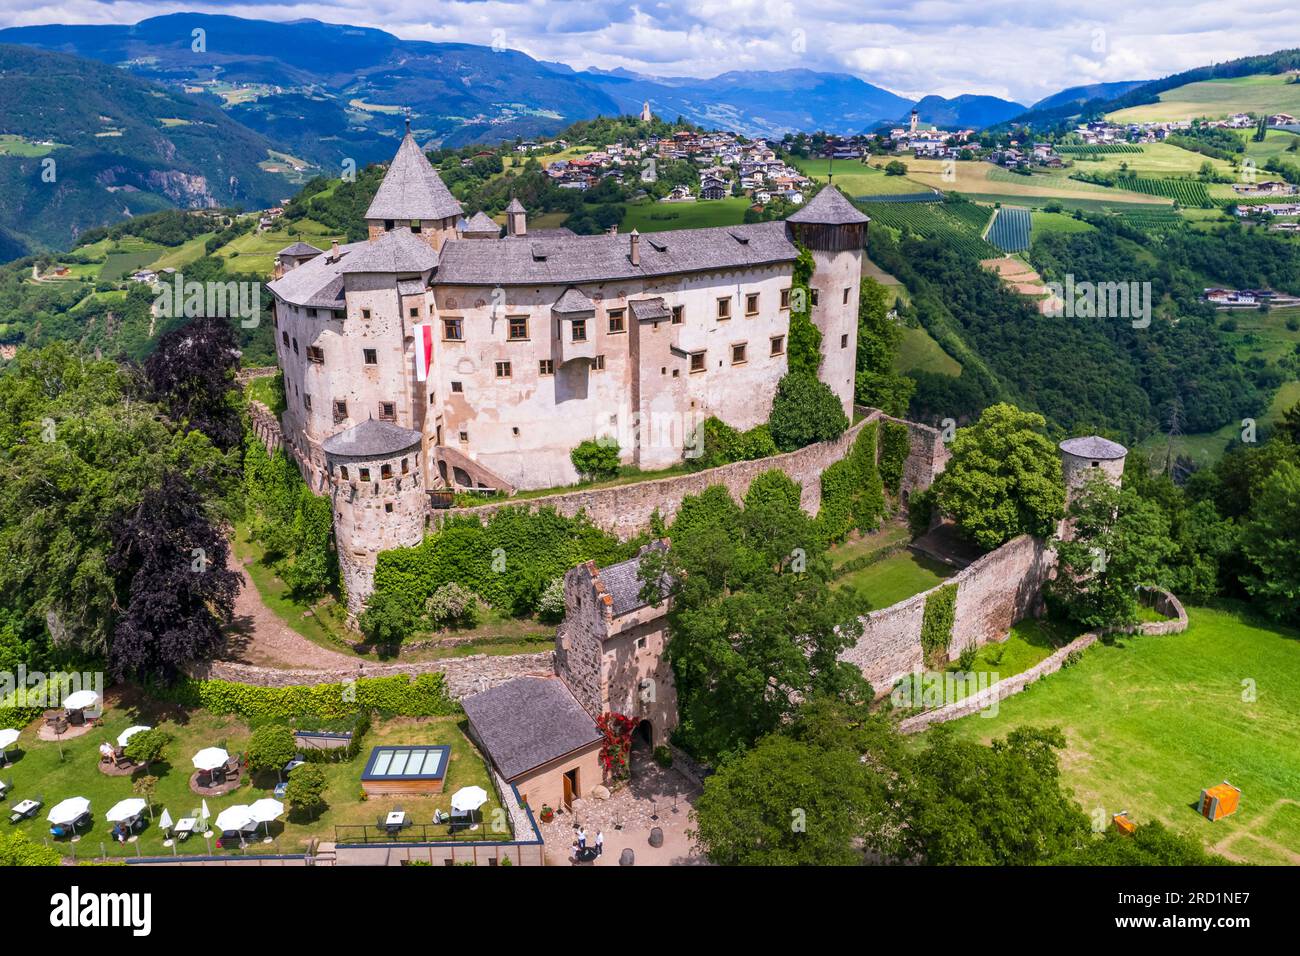 Wunderschöne mittelalterliche Burgen Norditaliens, Südtirol-Region Alto Adige. Presule castel, Luftdrohne mit Blick aus dem hohen Winkel Stockfoto